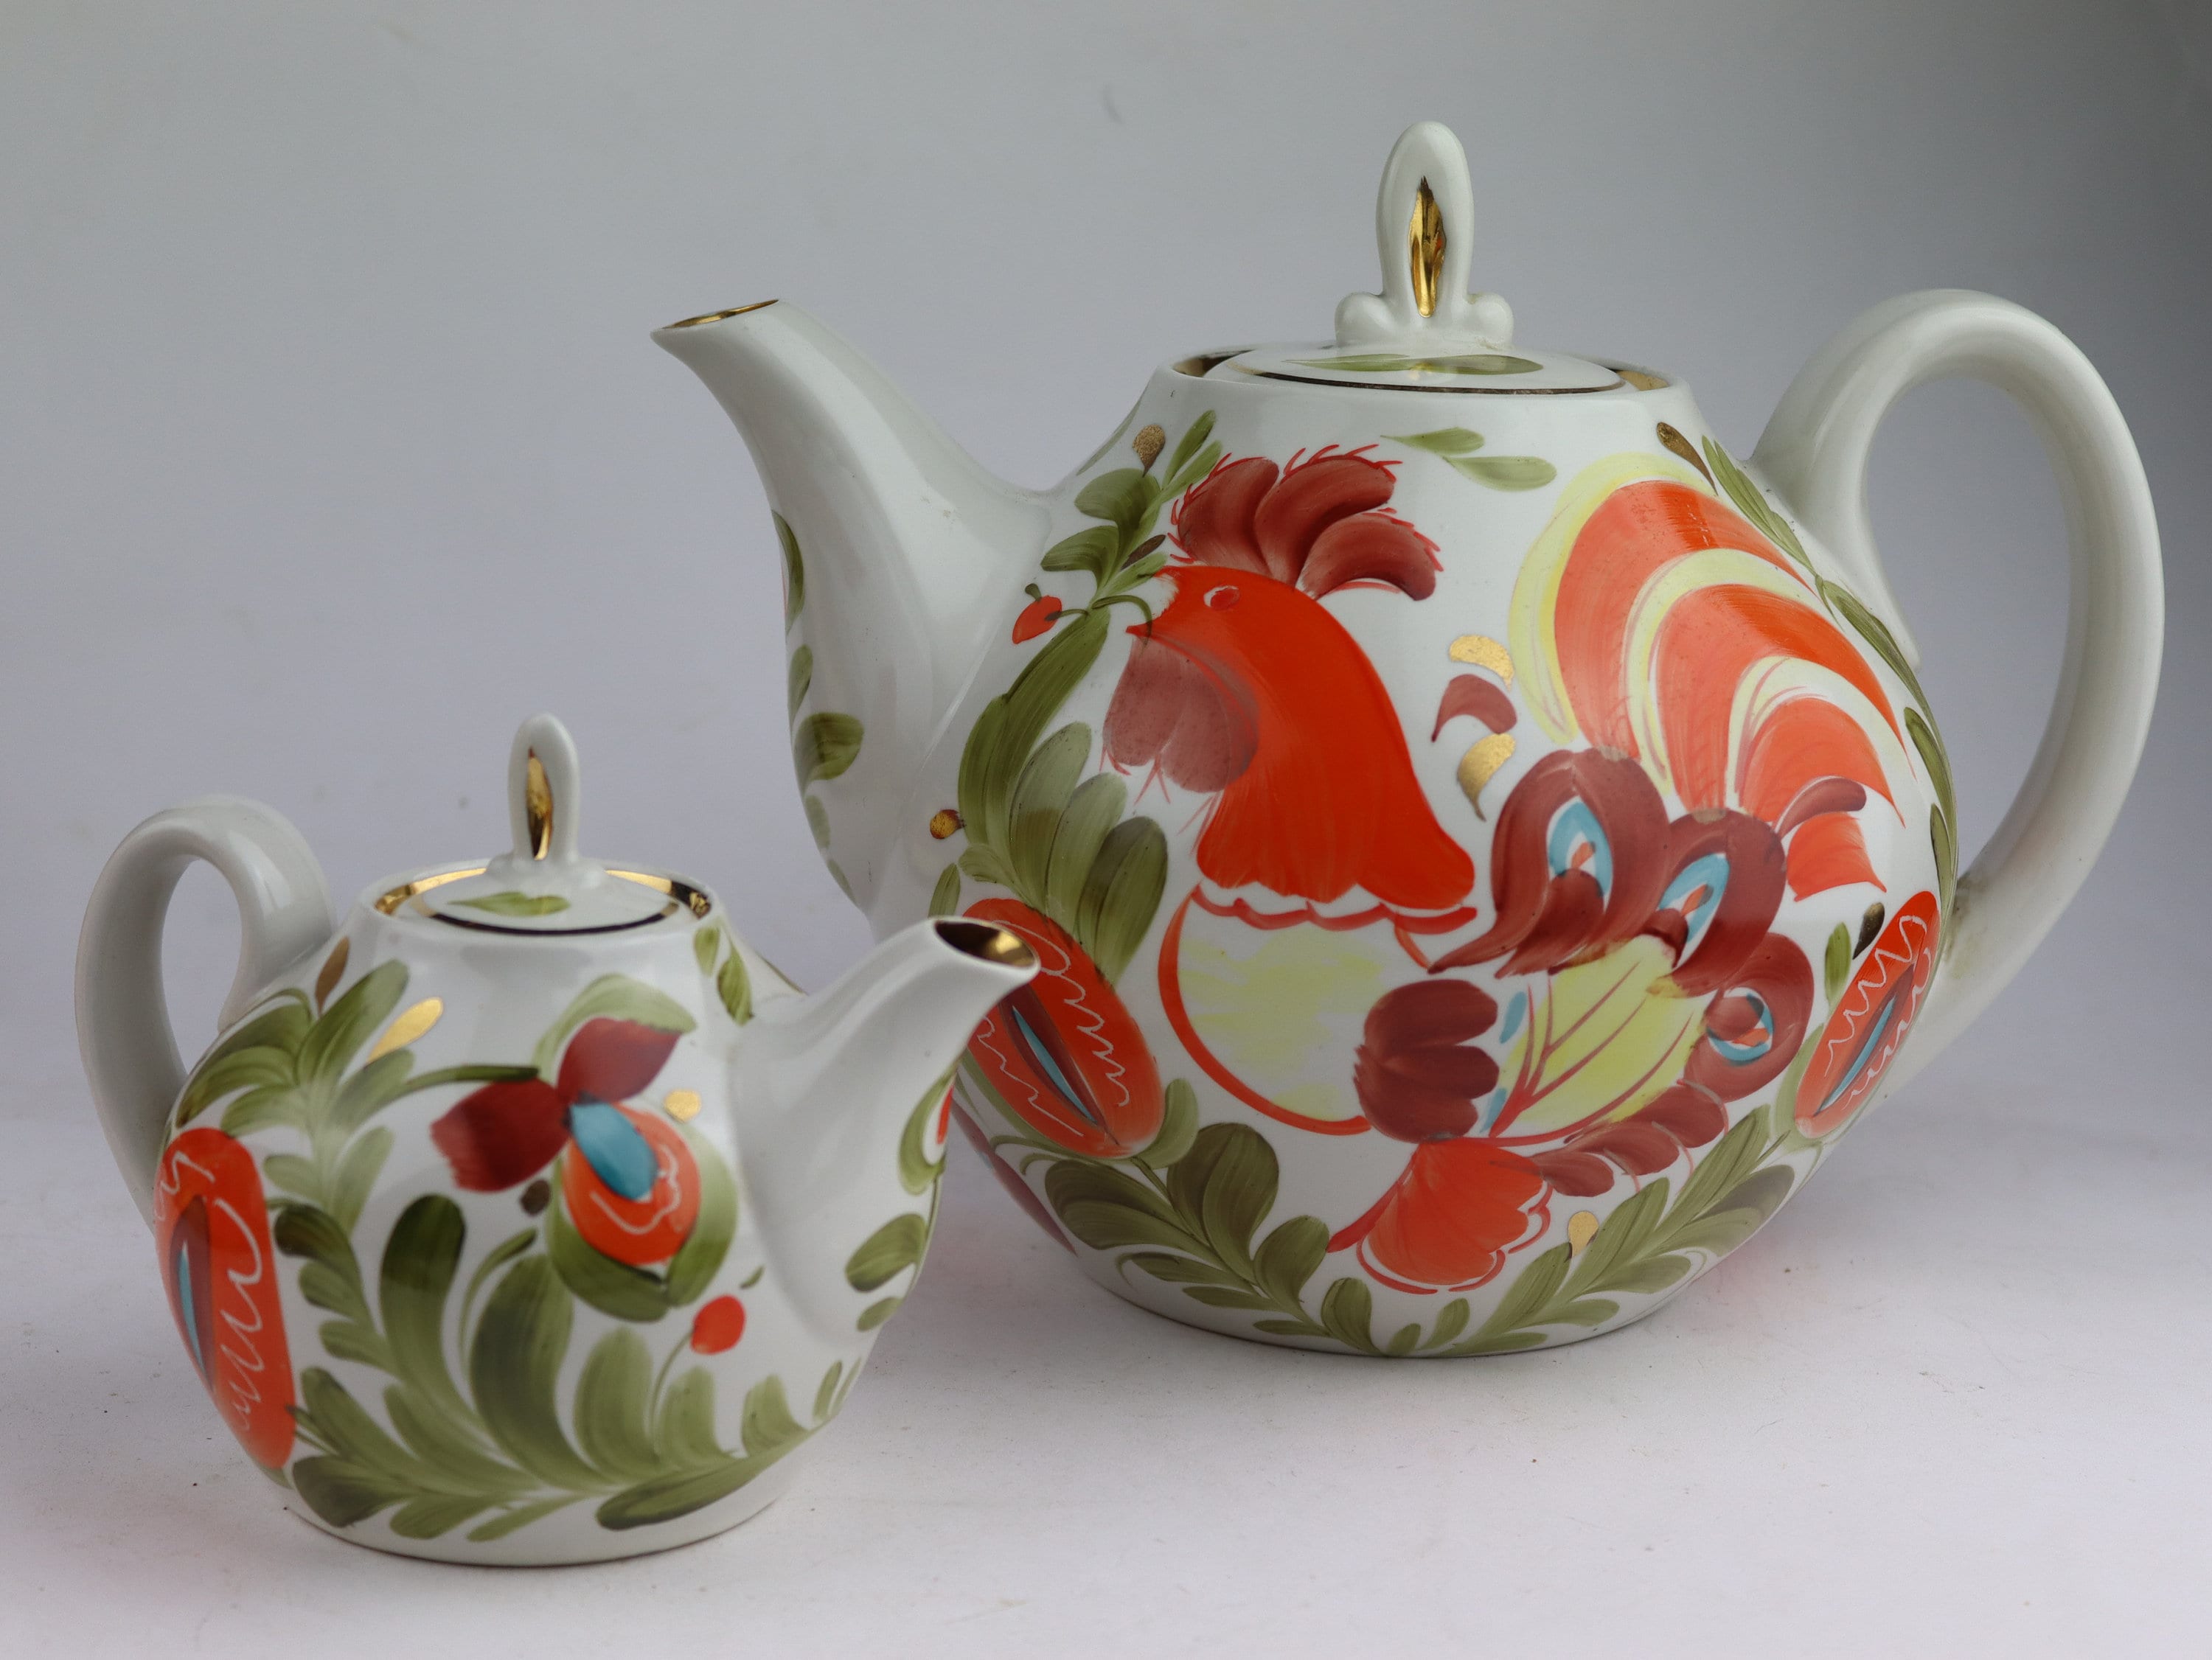 ensemble soviétique de 2 théières en porcelaine, bouilloire, théière, théière vintage, tasse, thé, vaisselle, casserole, ensemble café